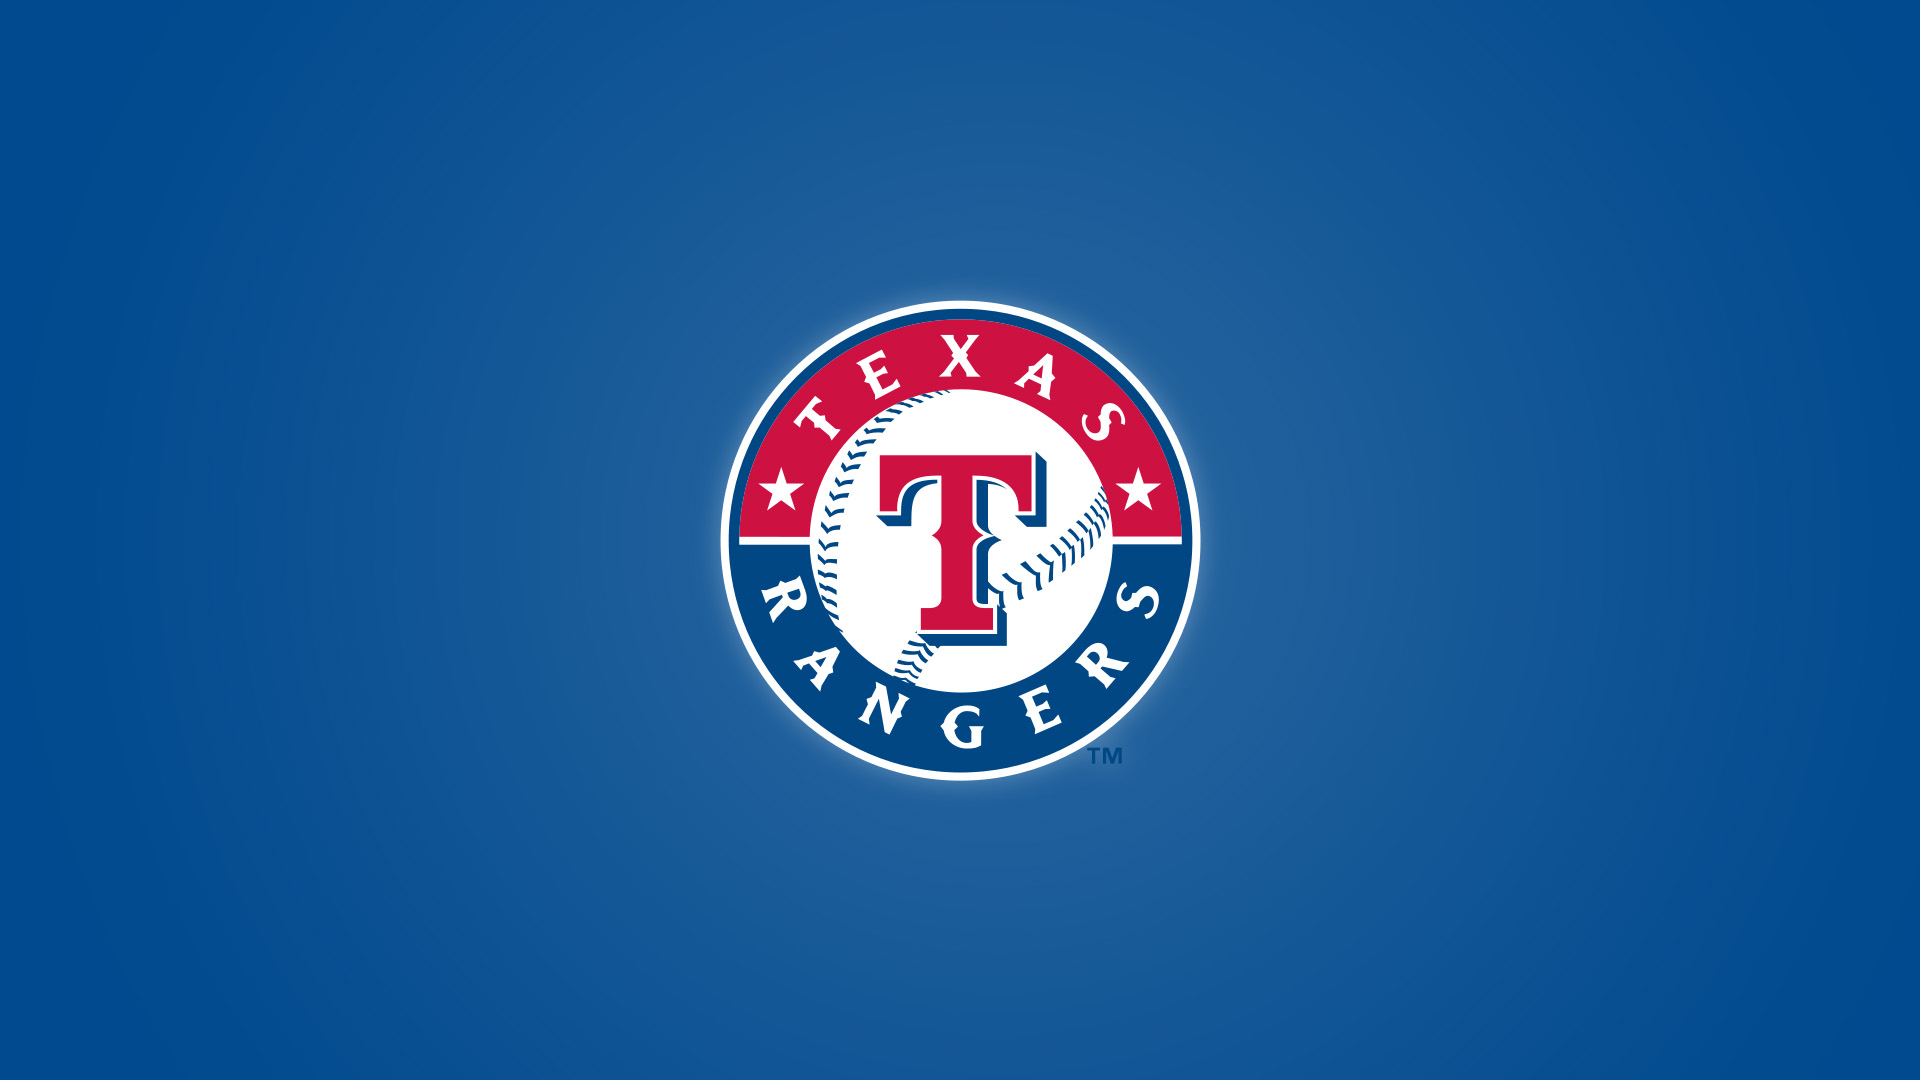 Wallpaper Texas Rangers Logo HD Wallpaper 1080p Upload at April 1